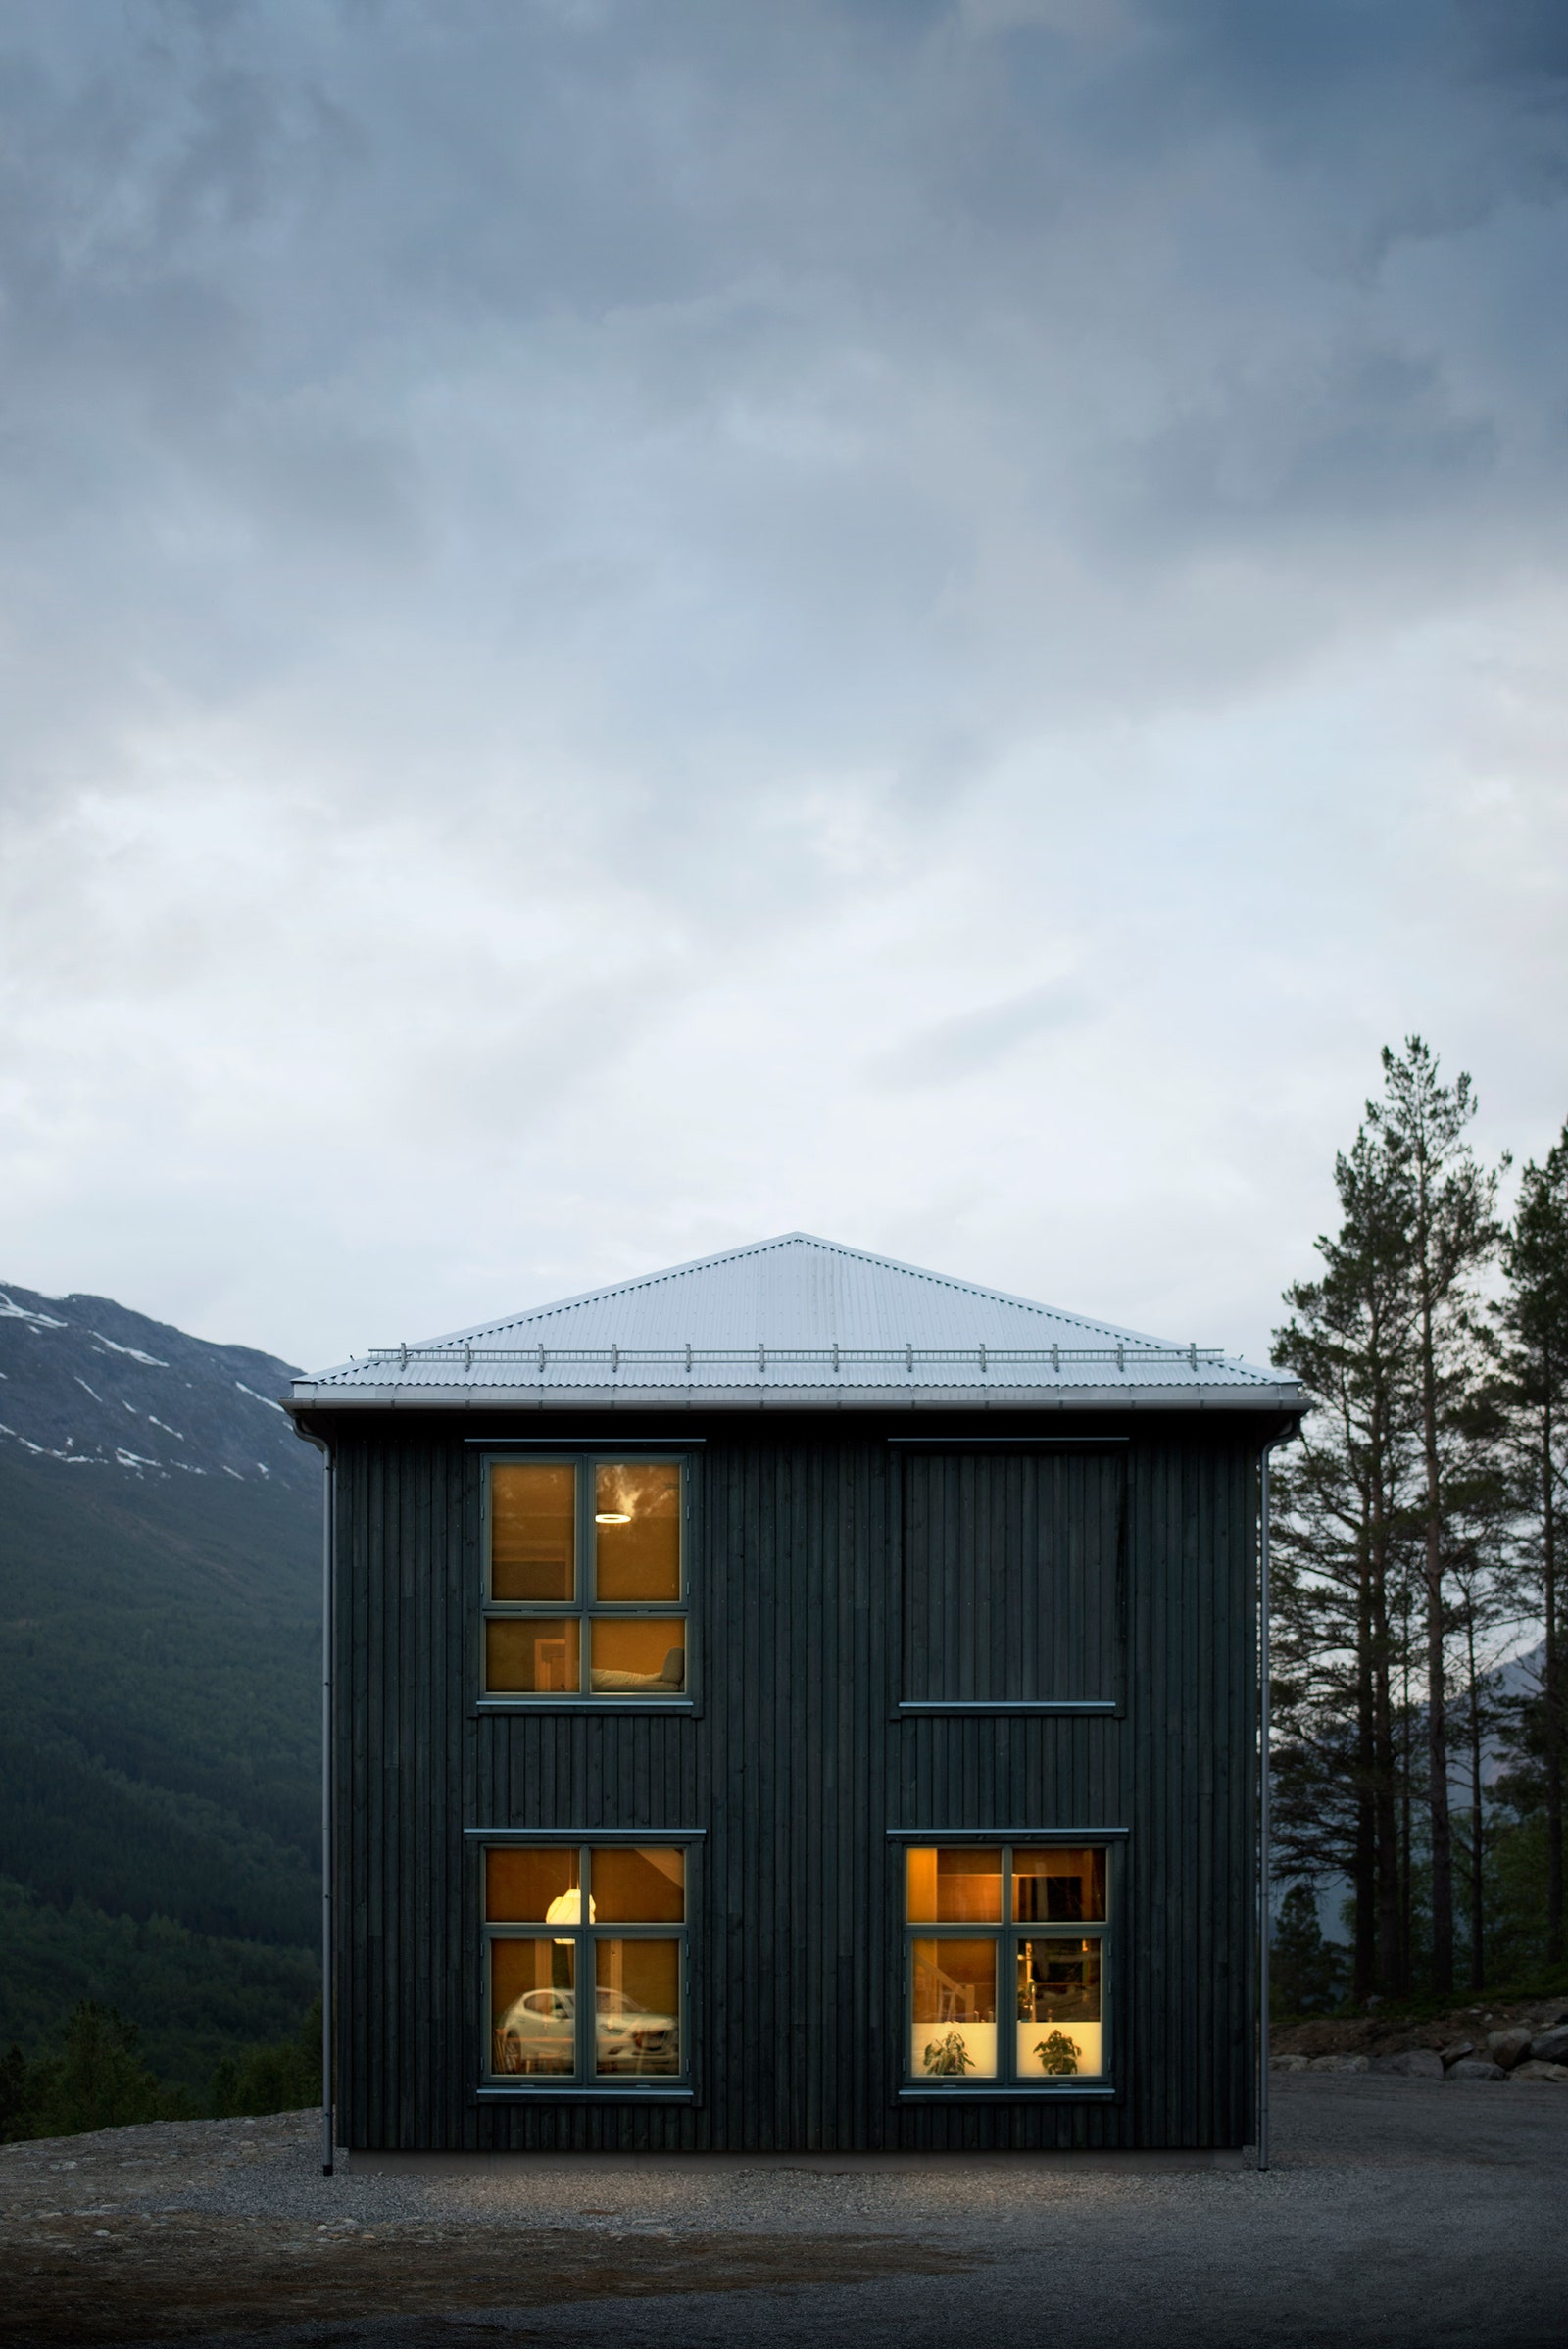 13 House “недостроенный” дом в Норвегии